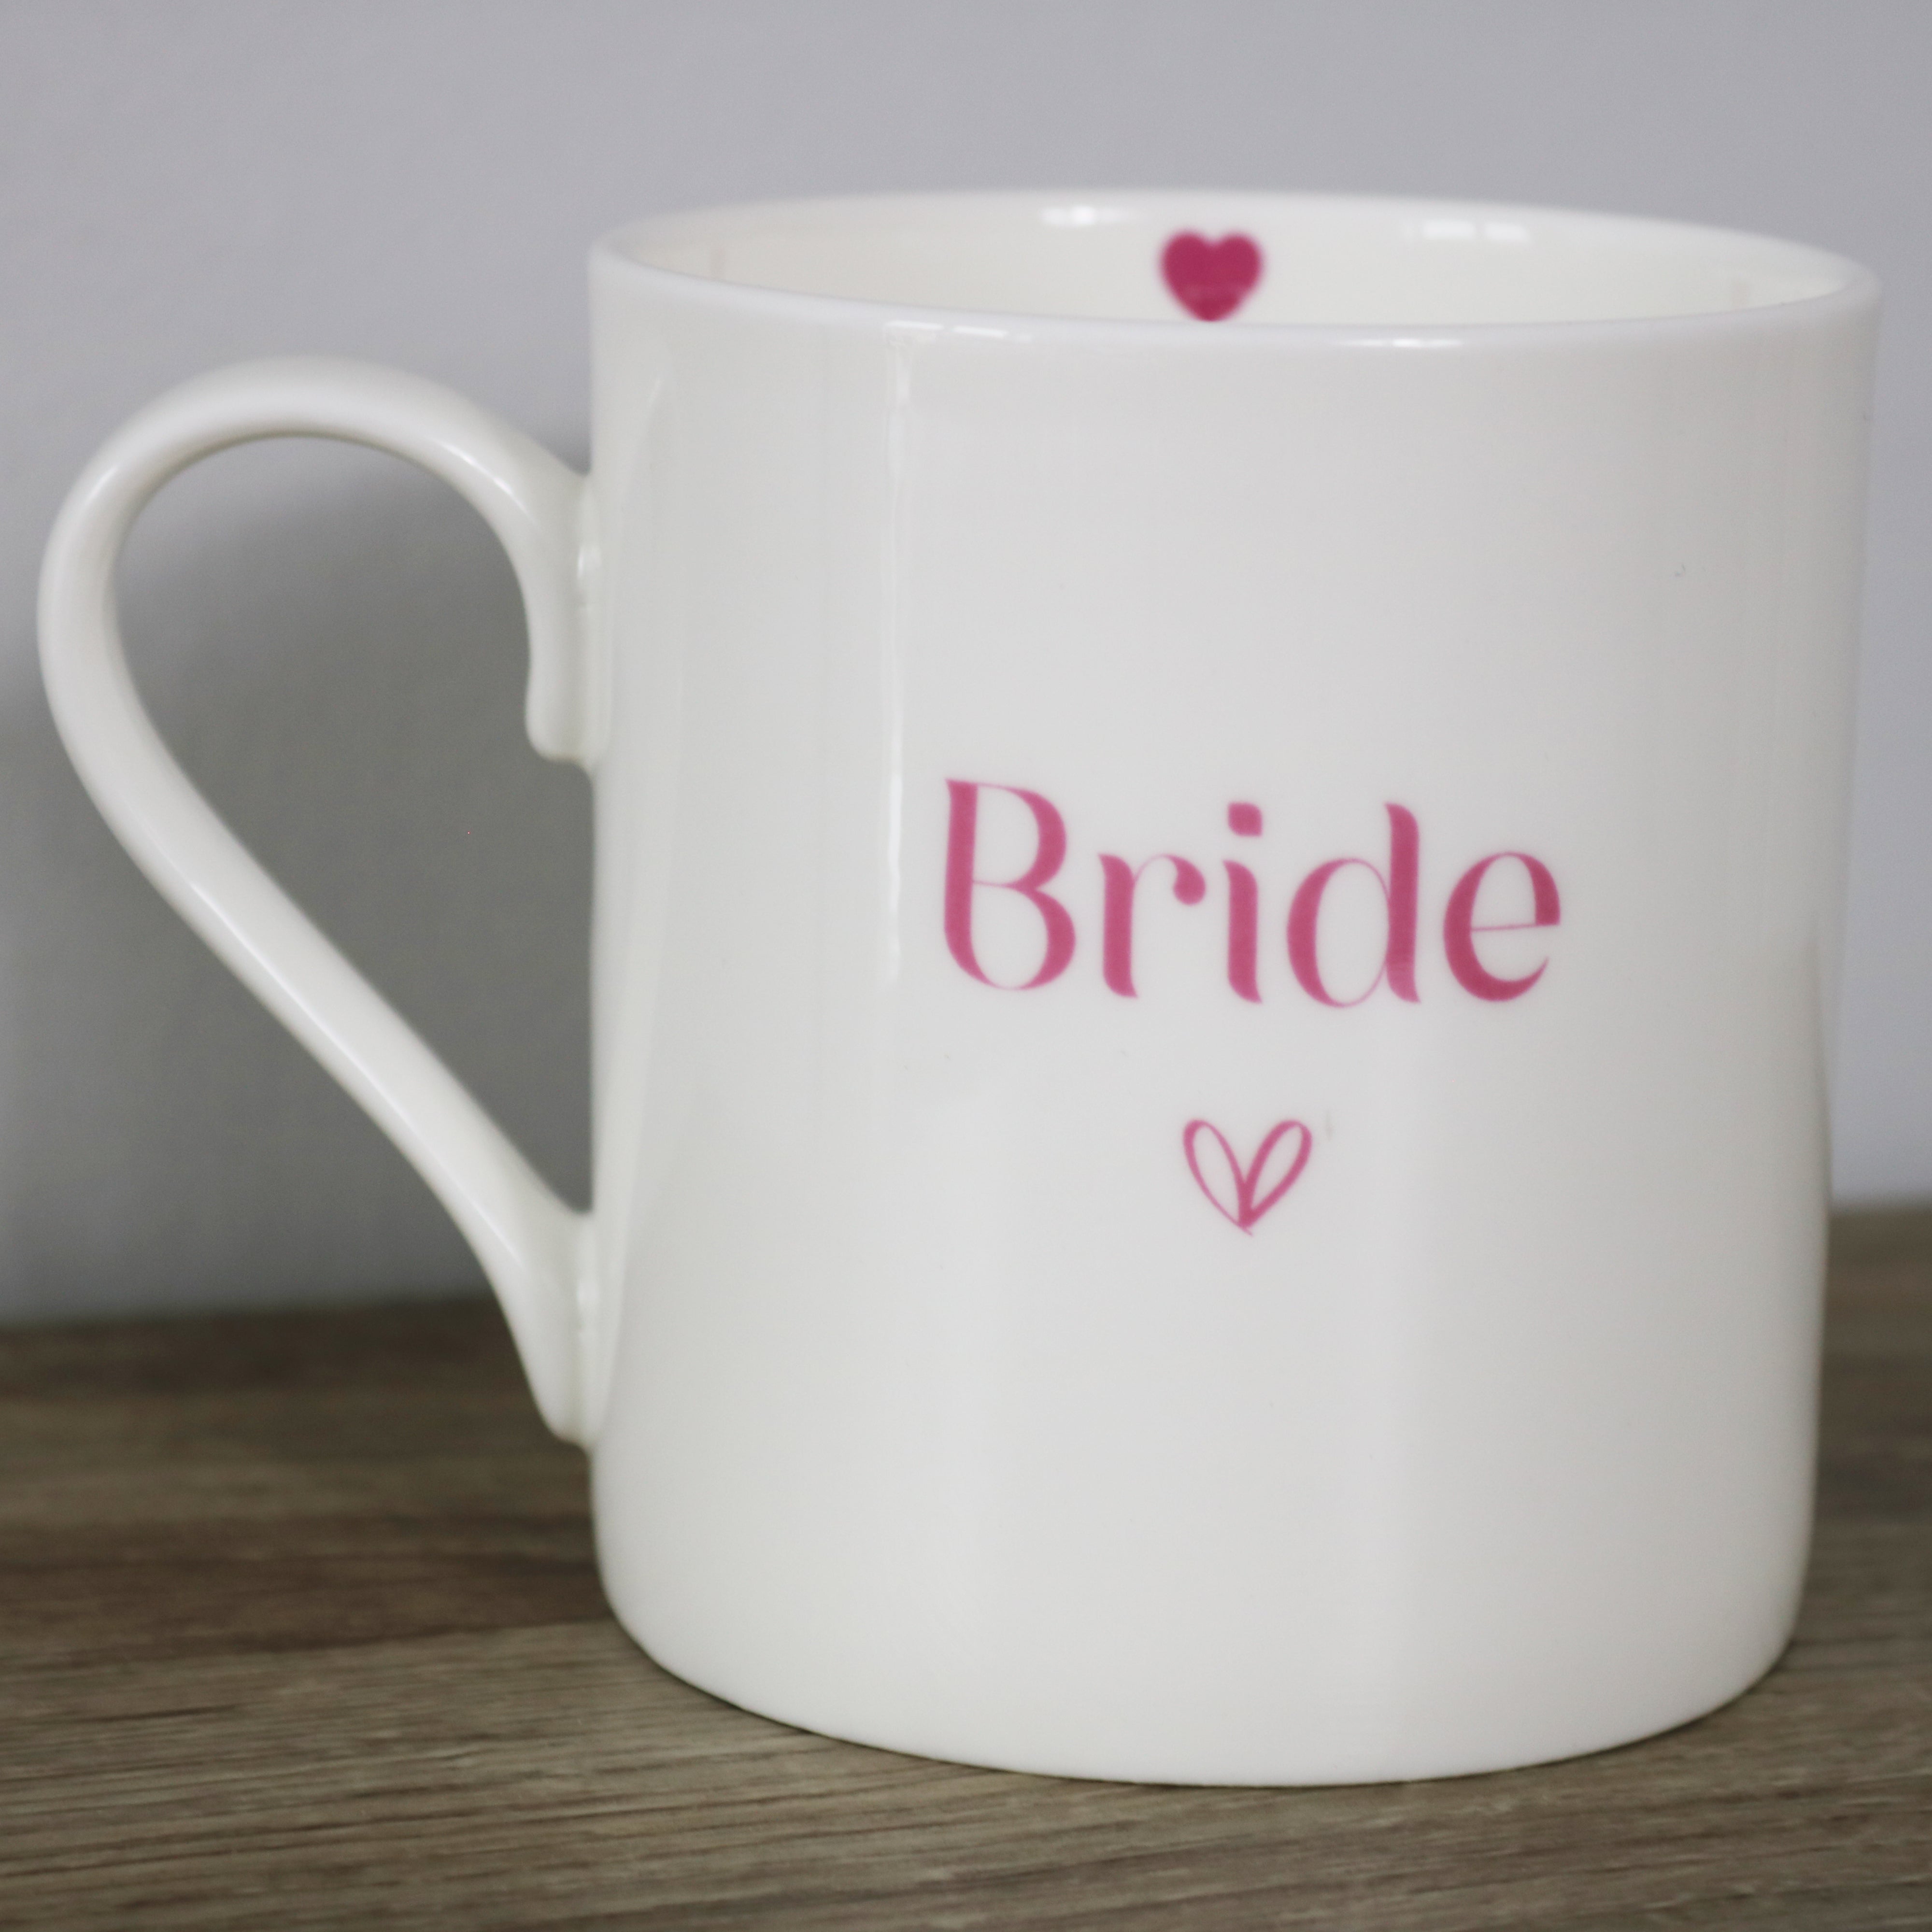 Bride - Large Mug